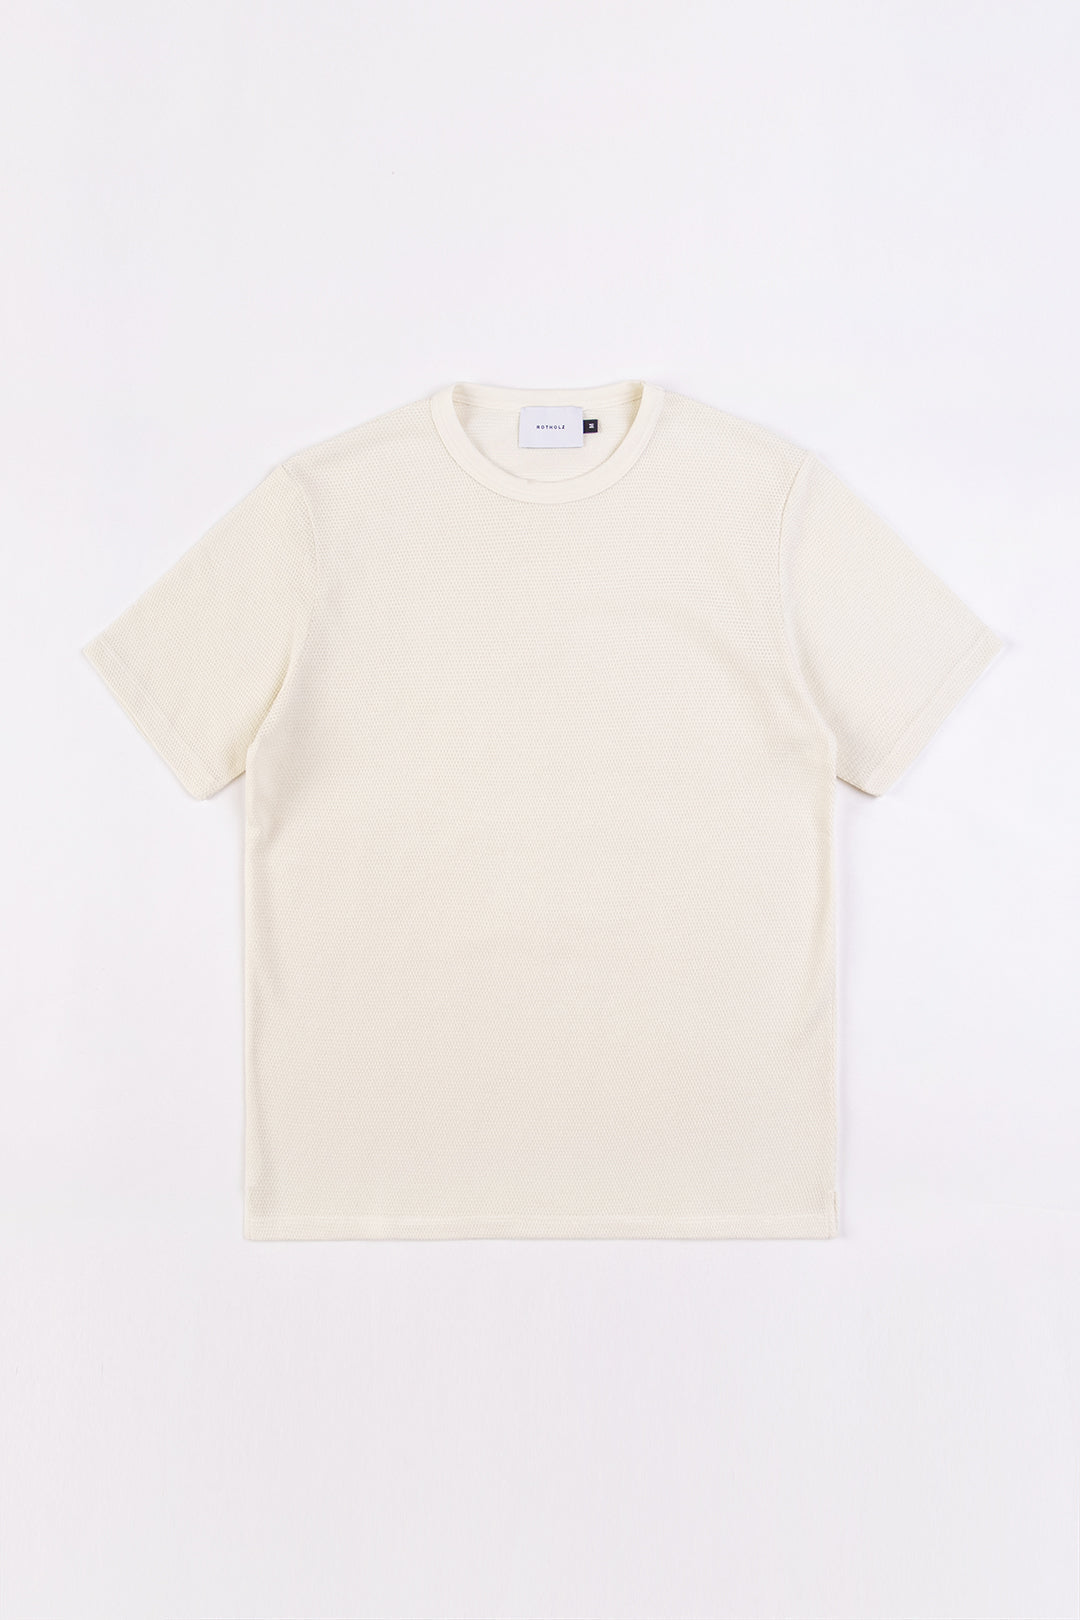 T-shirt blanc en coton 100% biologique de Rotholz